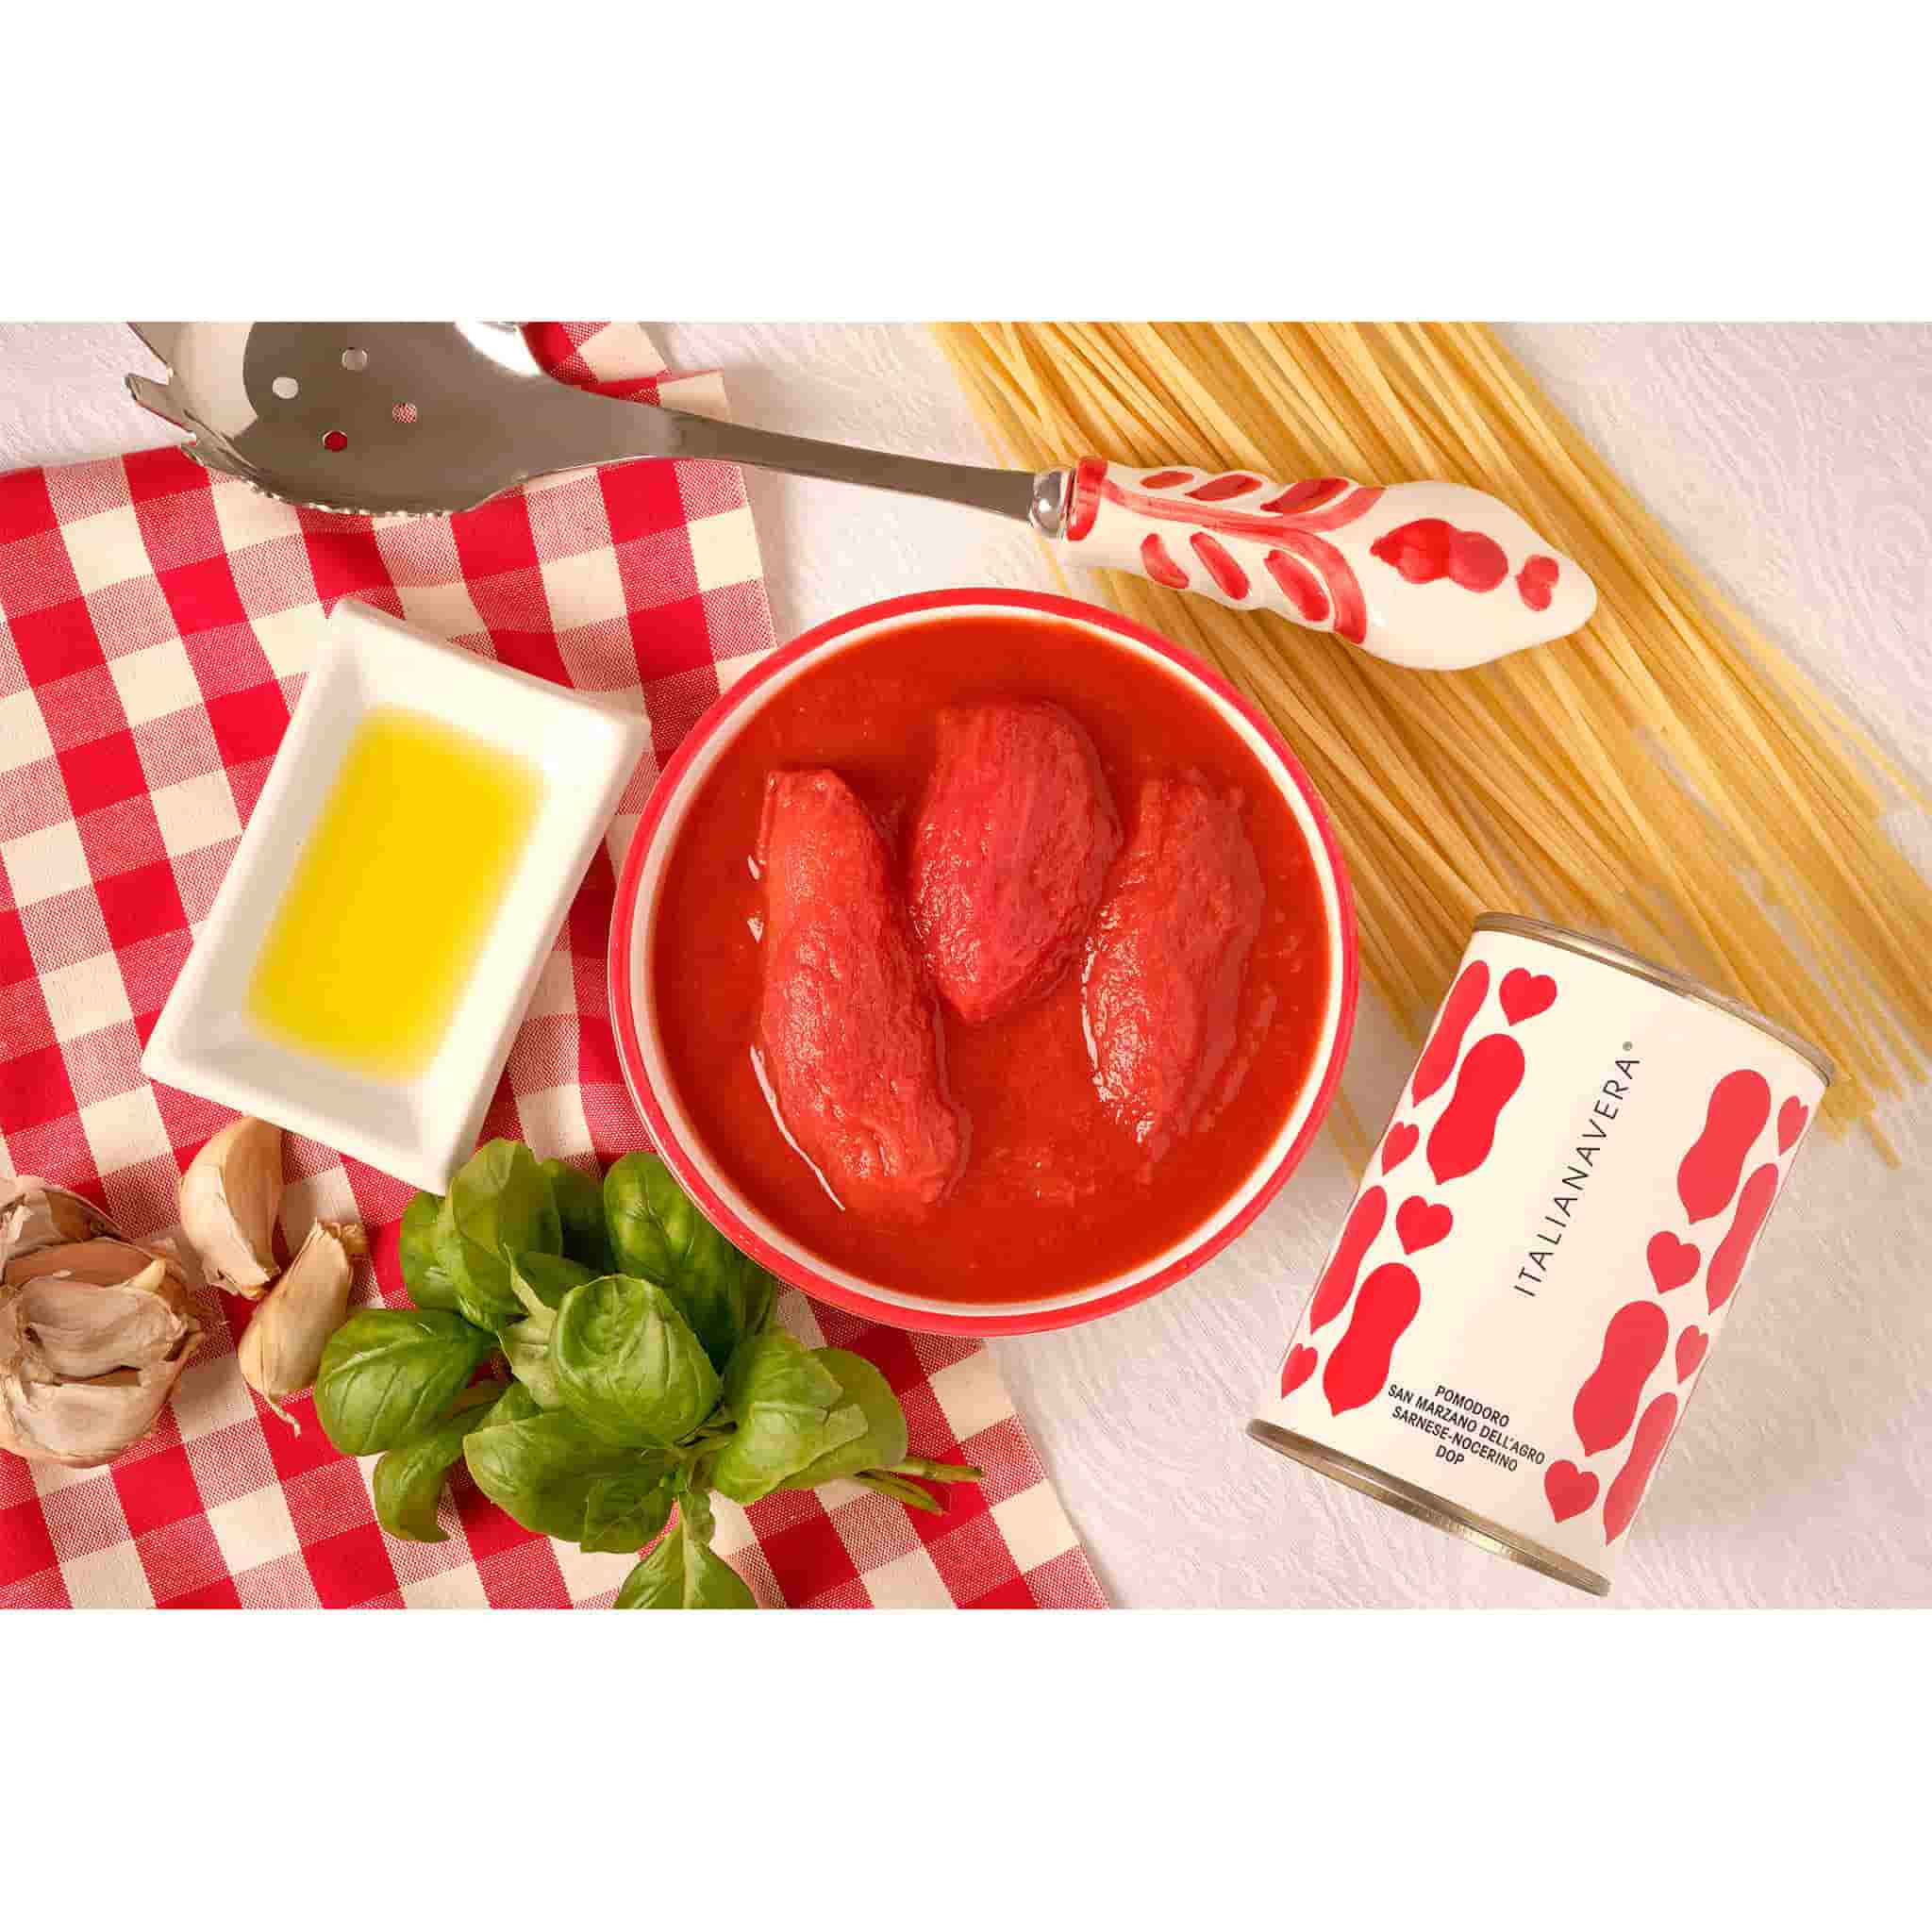 Italianavera DOP San Marzano Peeled Tomatoes 400g